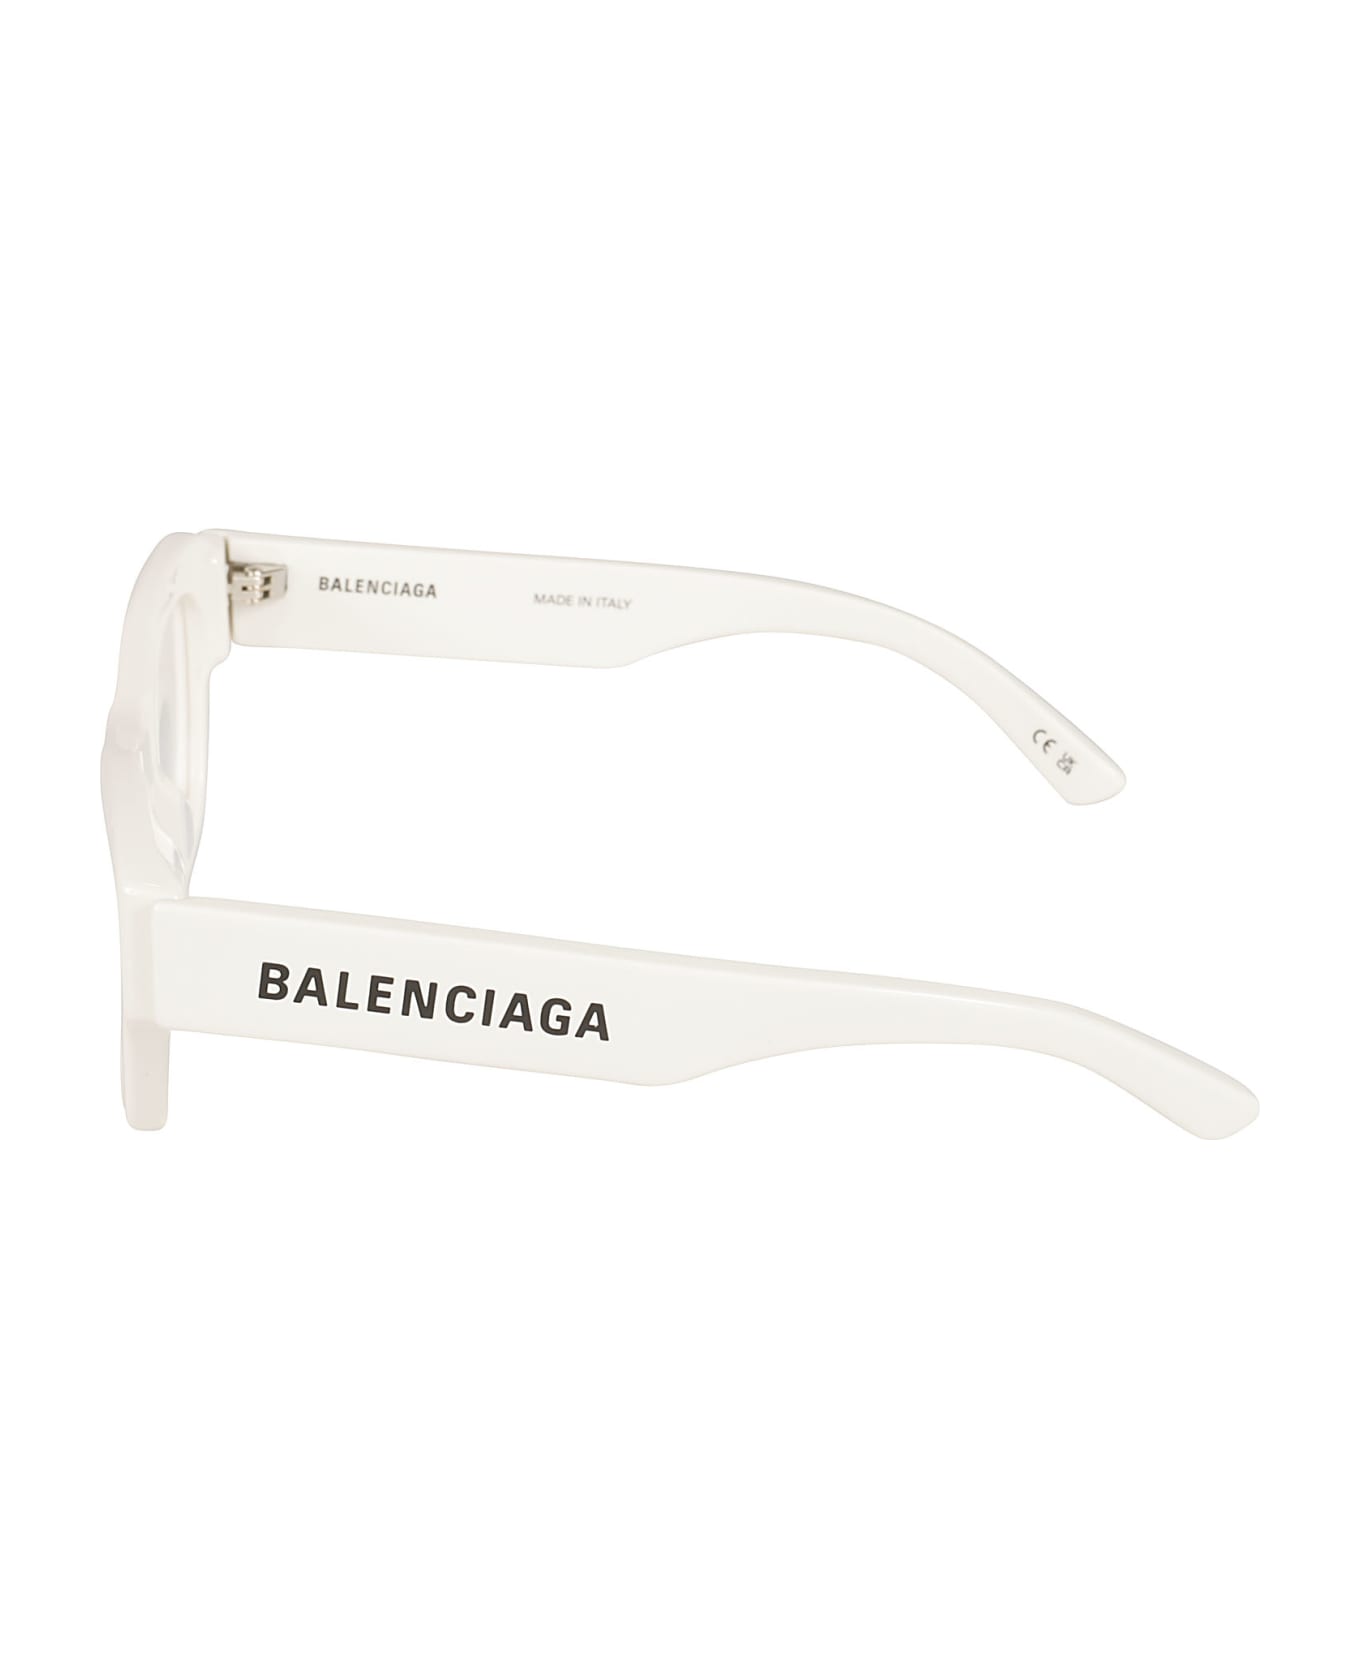 Balenciaga Eyewear Square Frame Logo Sided Glasses - White/Transparent アイウェア